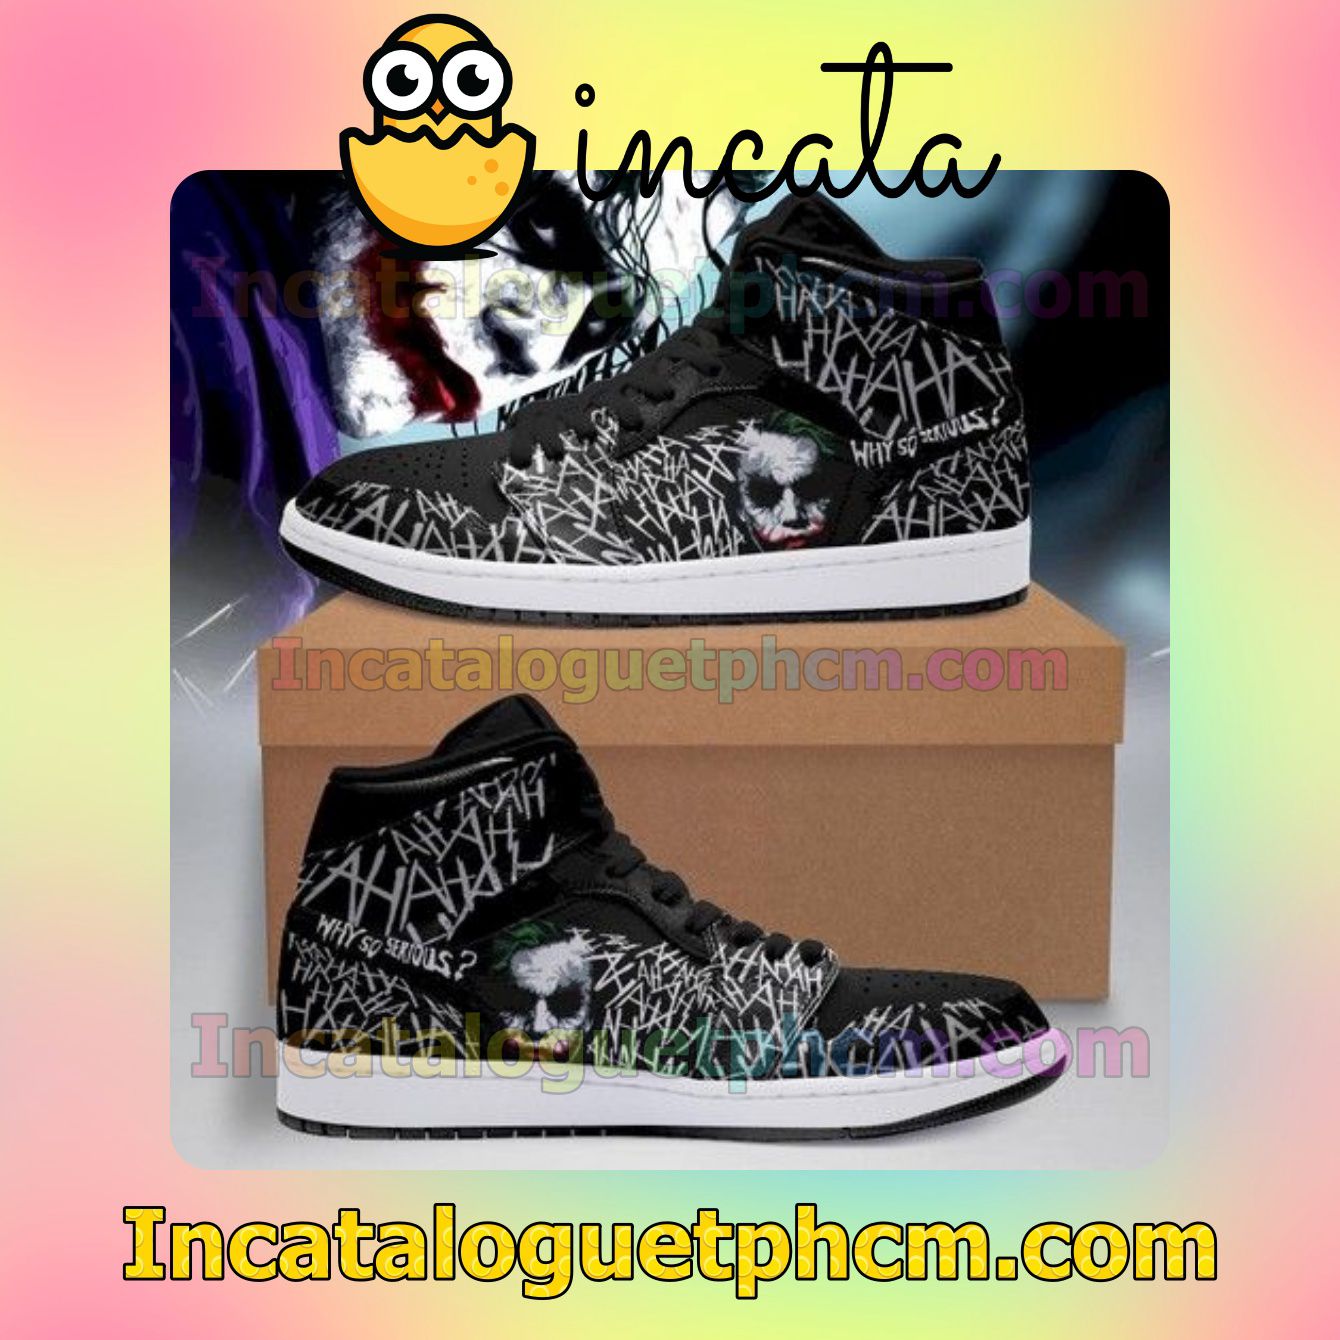 The Joker Haha Jd Gift For Fan Air Jordan 1 Inspired Shoes